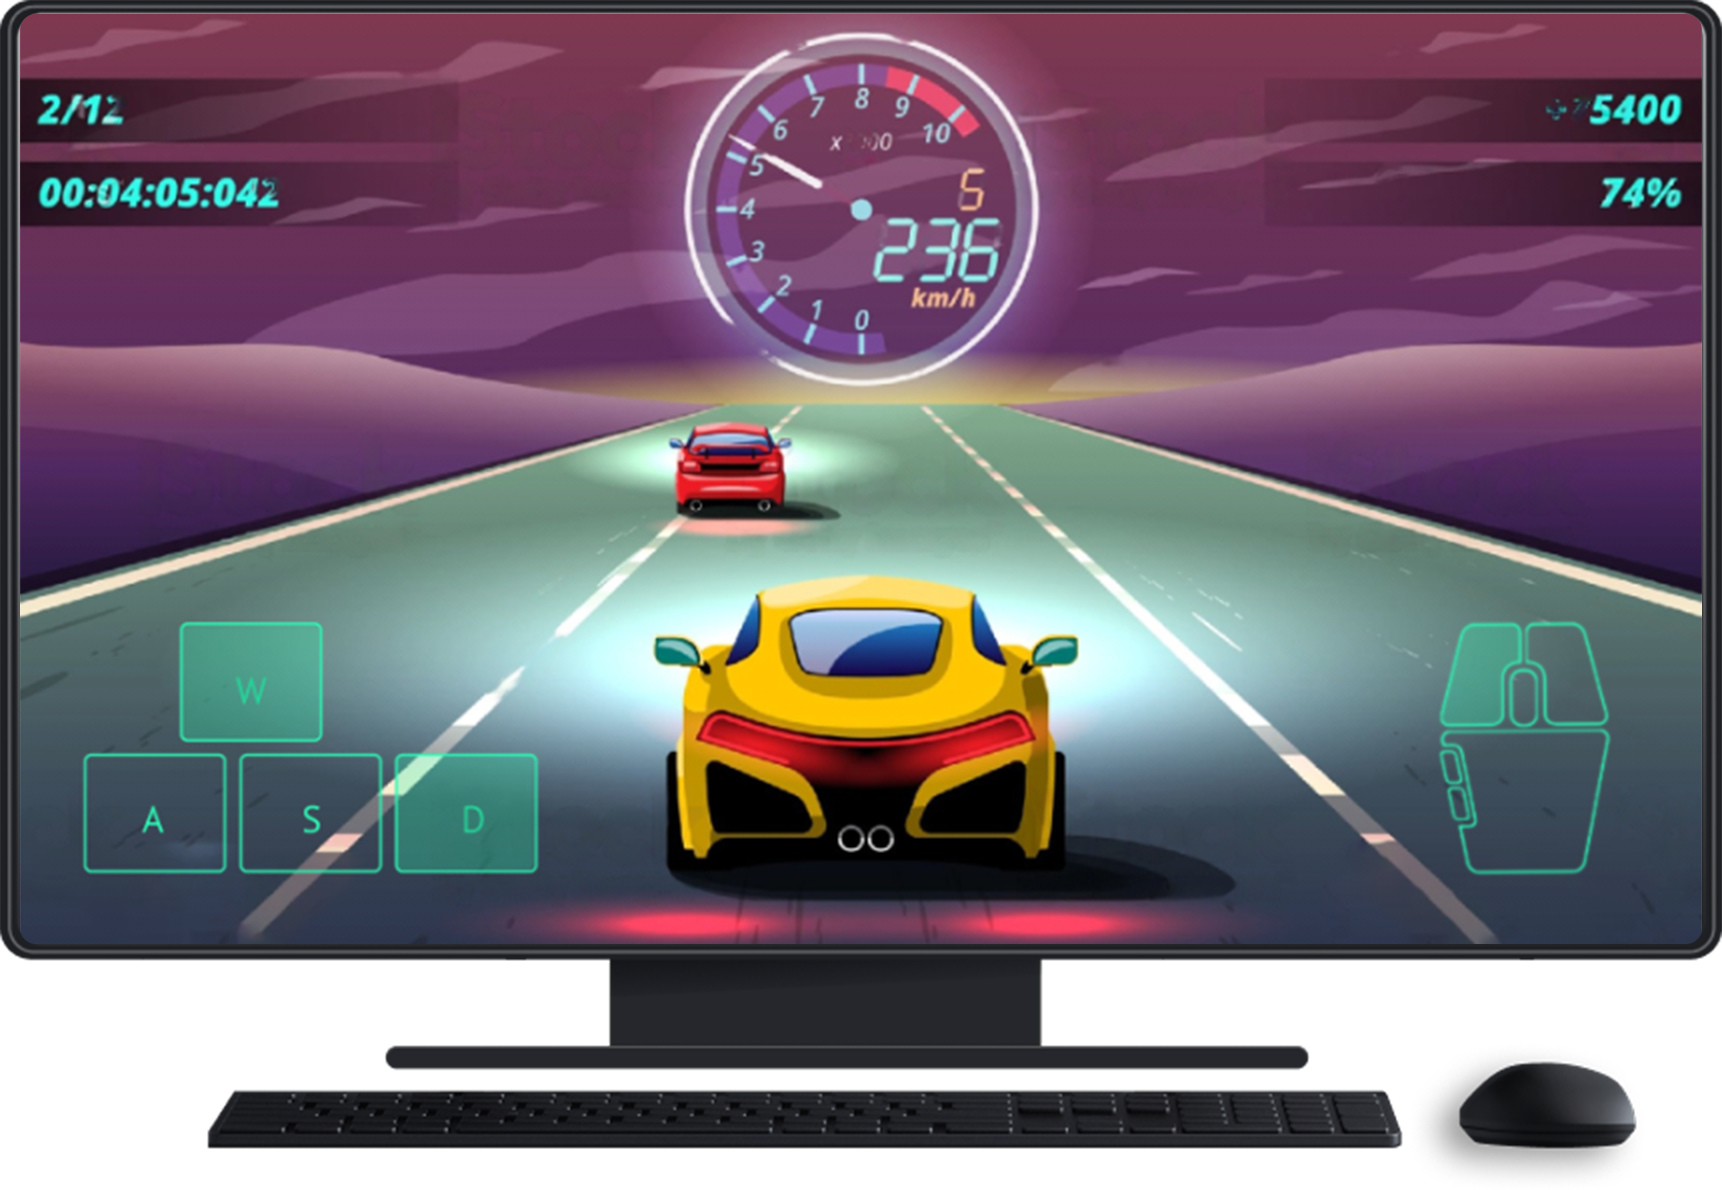 Komputer desktop dengan keyboard dan mouse. Game ada di layar, menampilkan input layar sentuh untuk kontrol arah dan mouse.